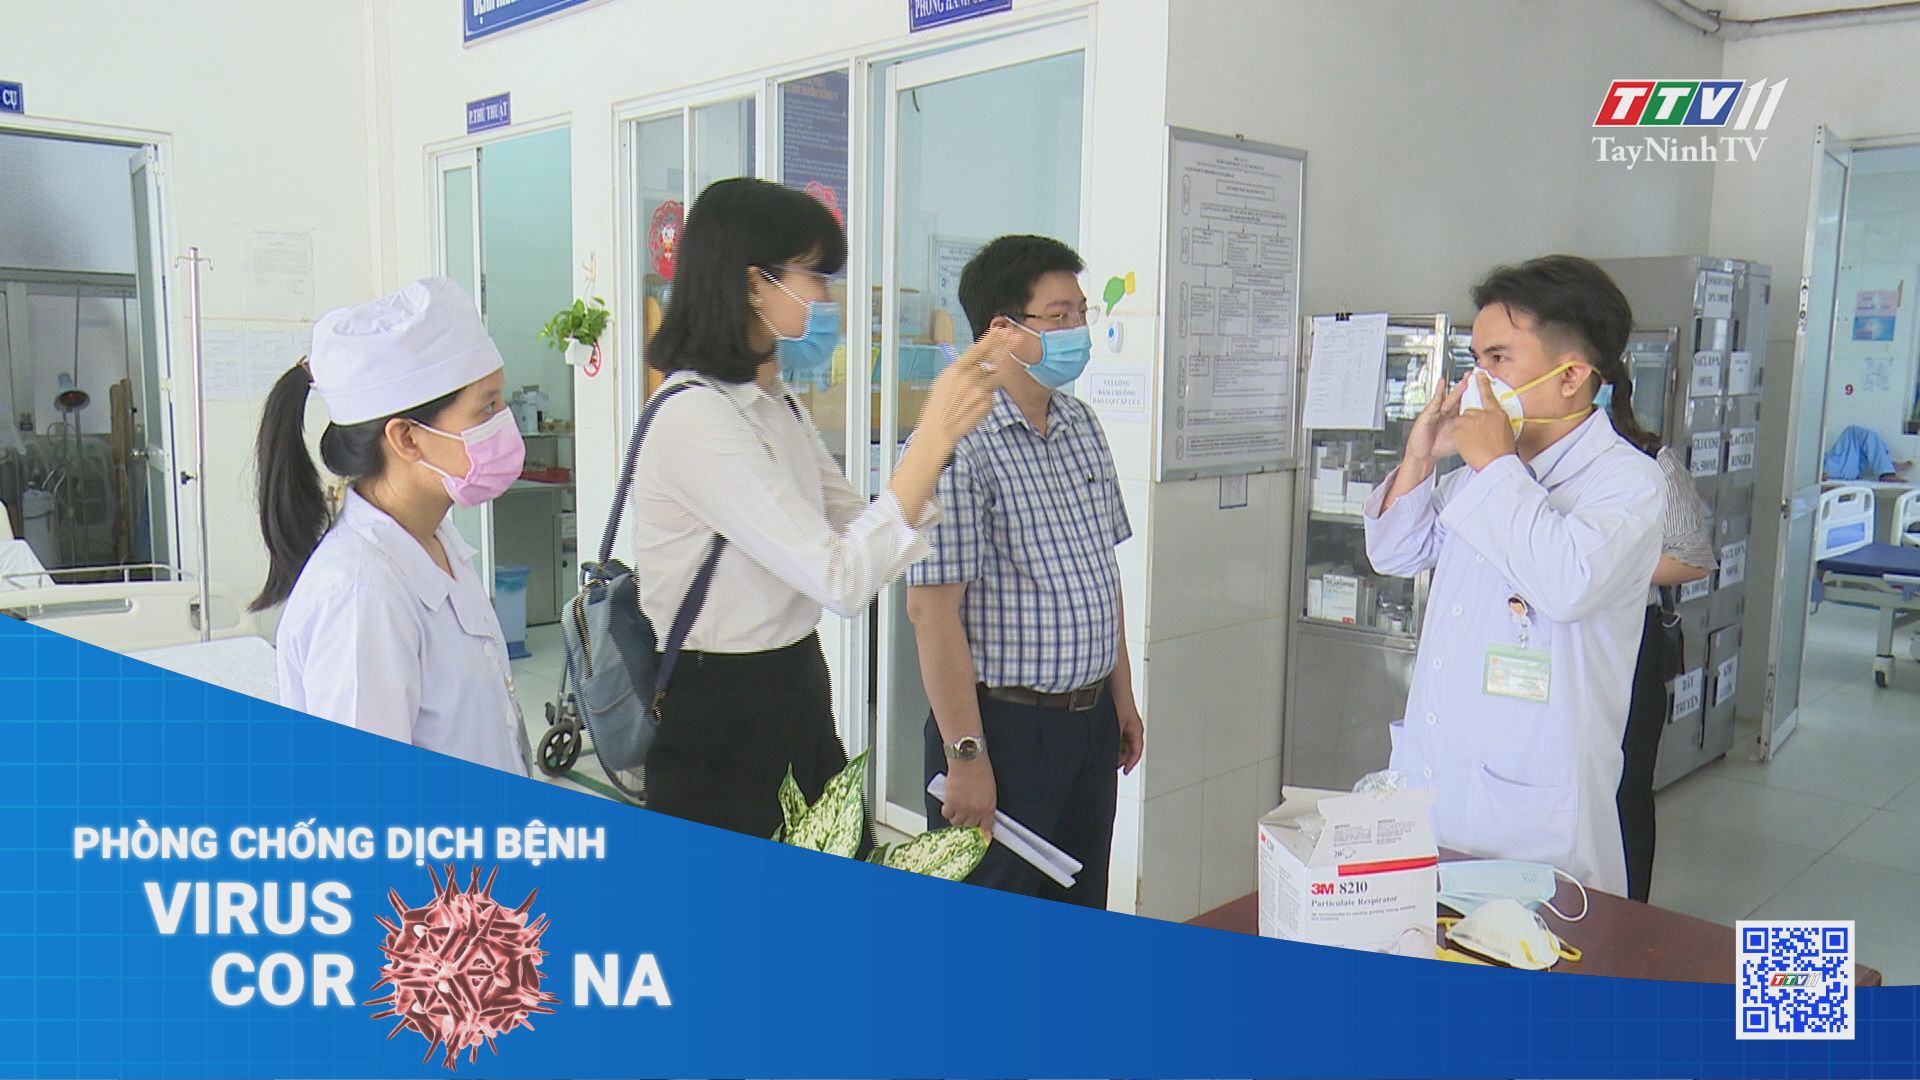 Tăng cường kiểm tra các tiêu chí an toàn phòng chống dịch tại bệnh viện, trung tâm y tế | TayNinhTV